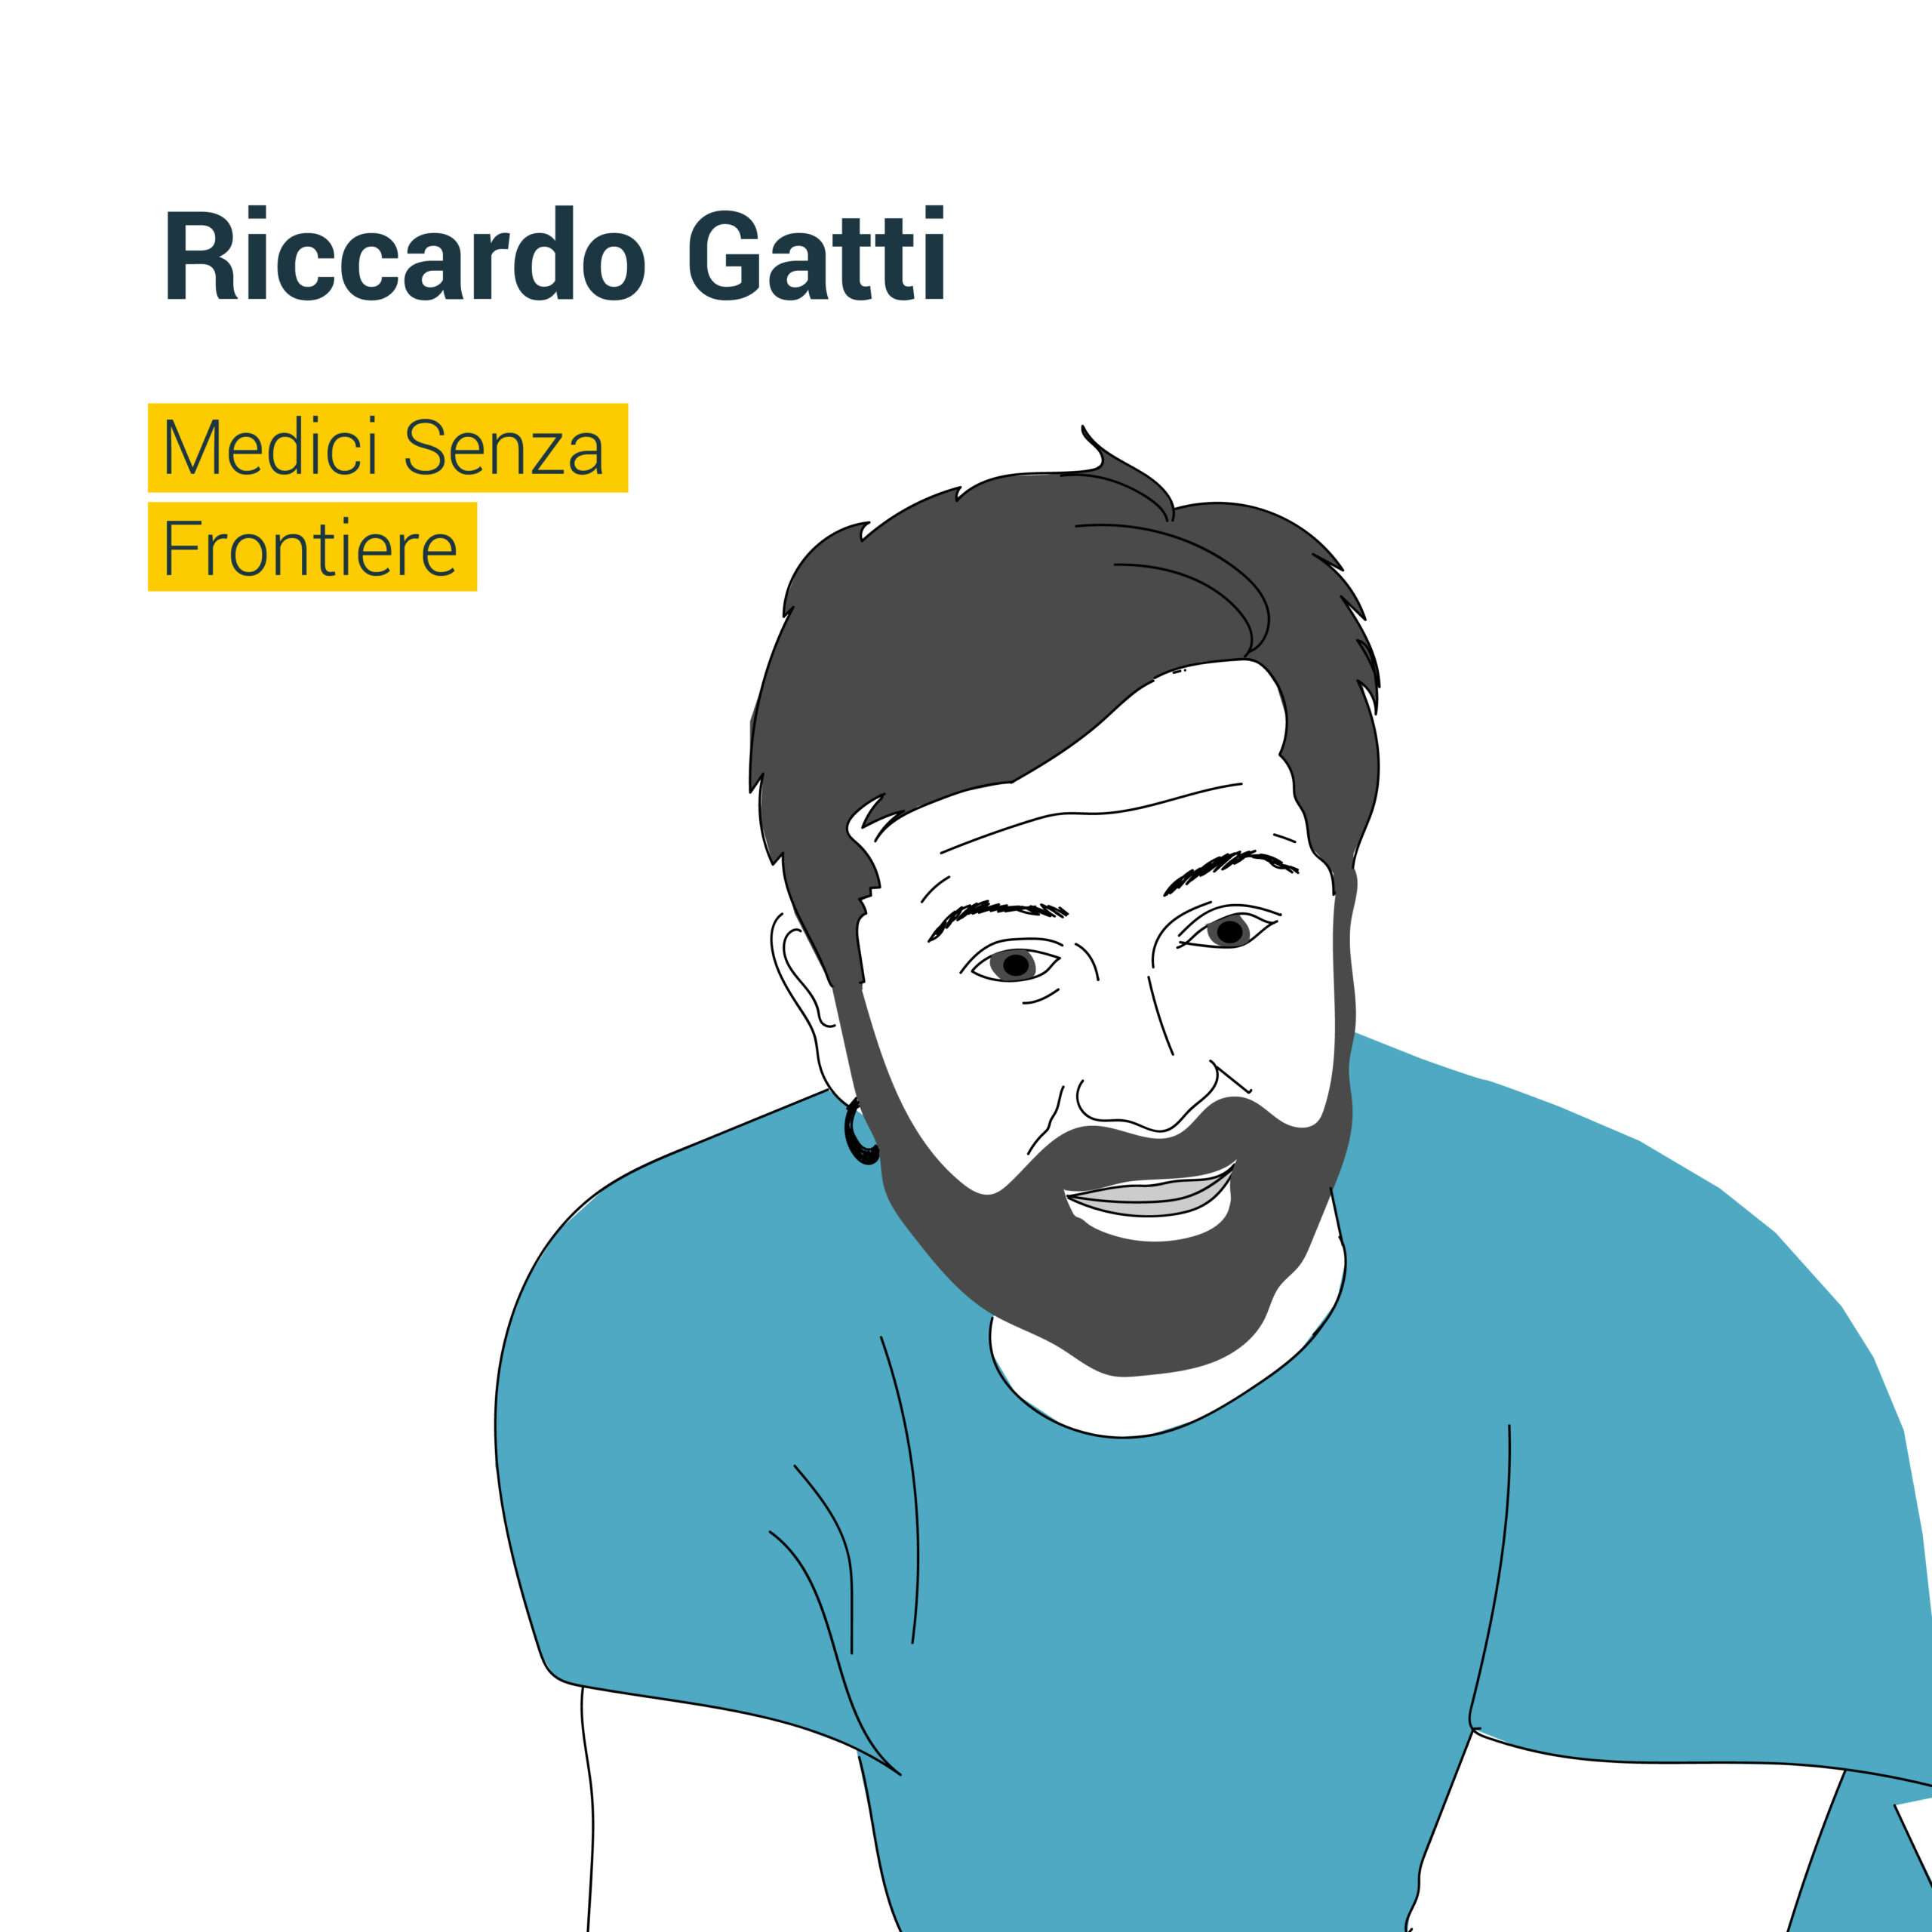 Ritratto di Riccardo Gatti